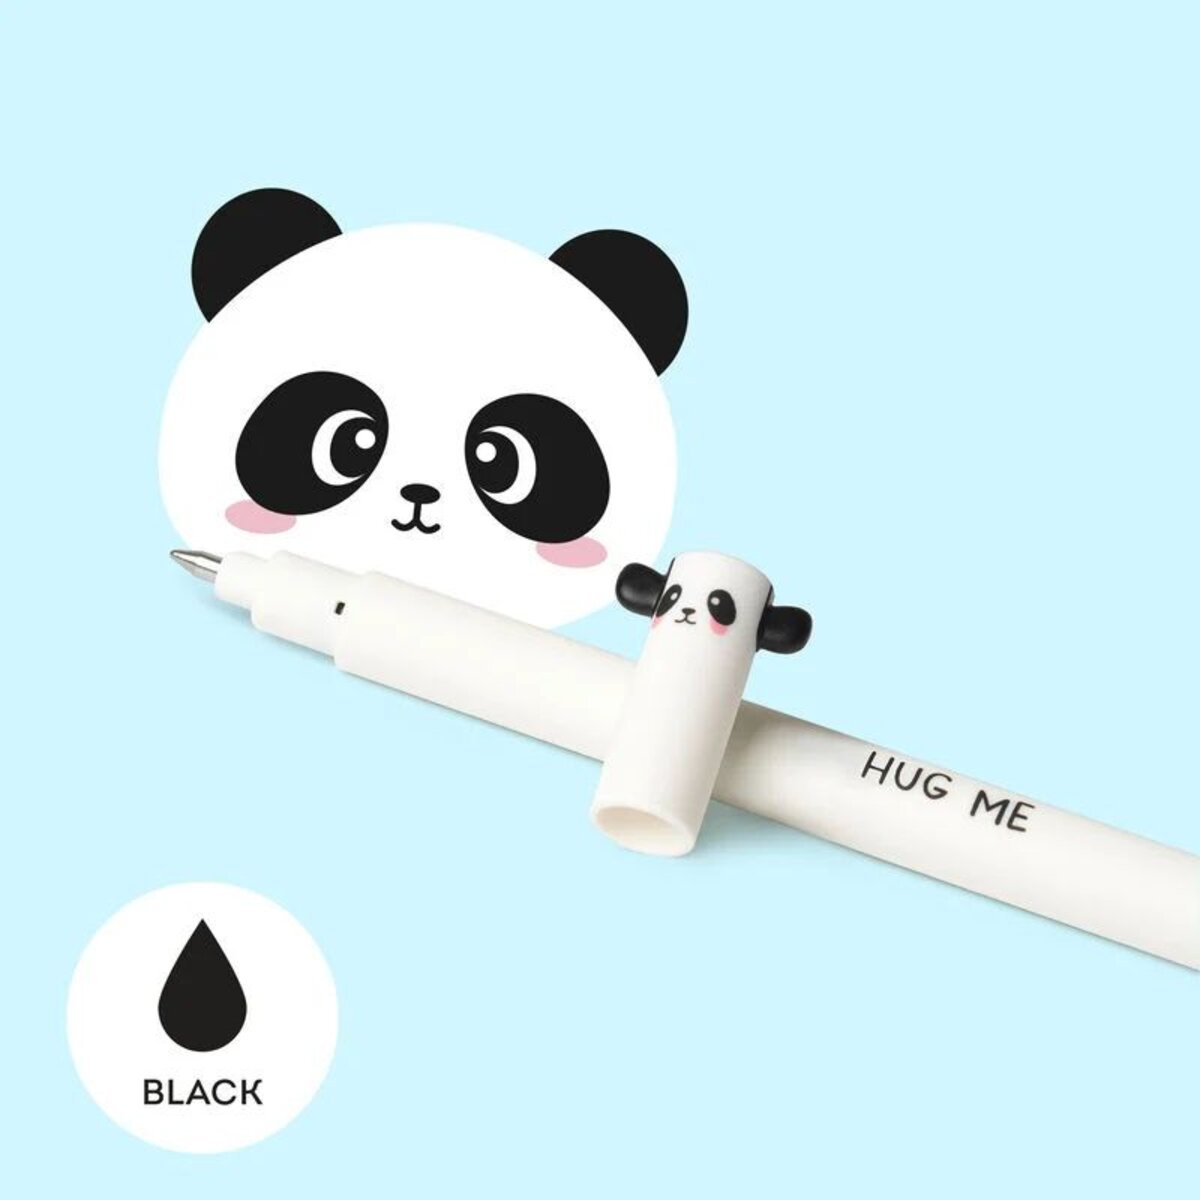 Legami Löschbarer Gelstift - Erasable Pen, Panda